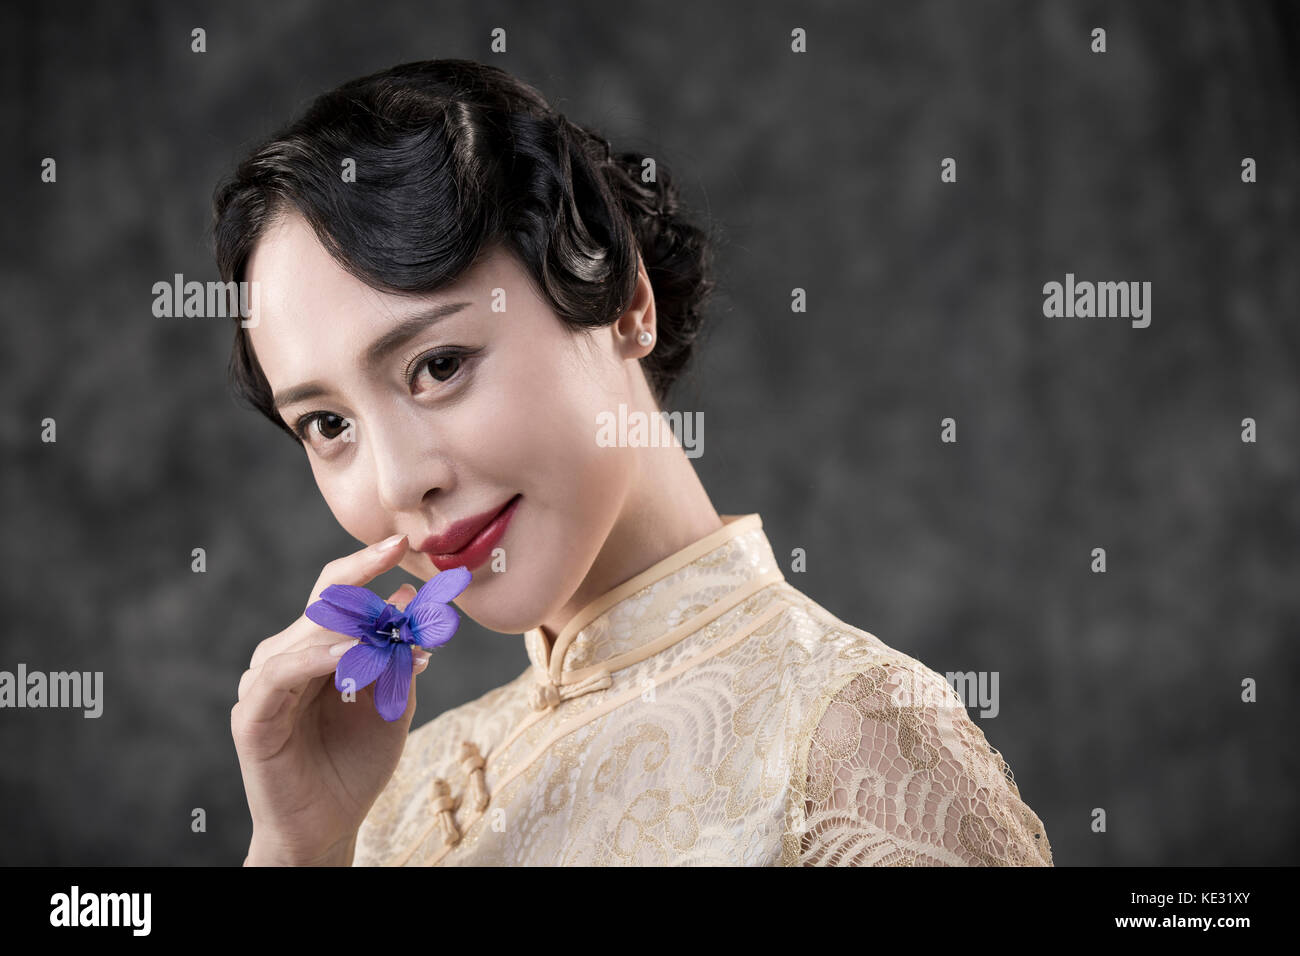 Retrato de joven mujer sonriente en estilo retro ropa oriental posando con flor Foto de stock